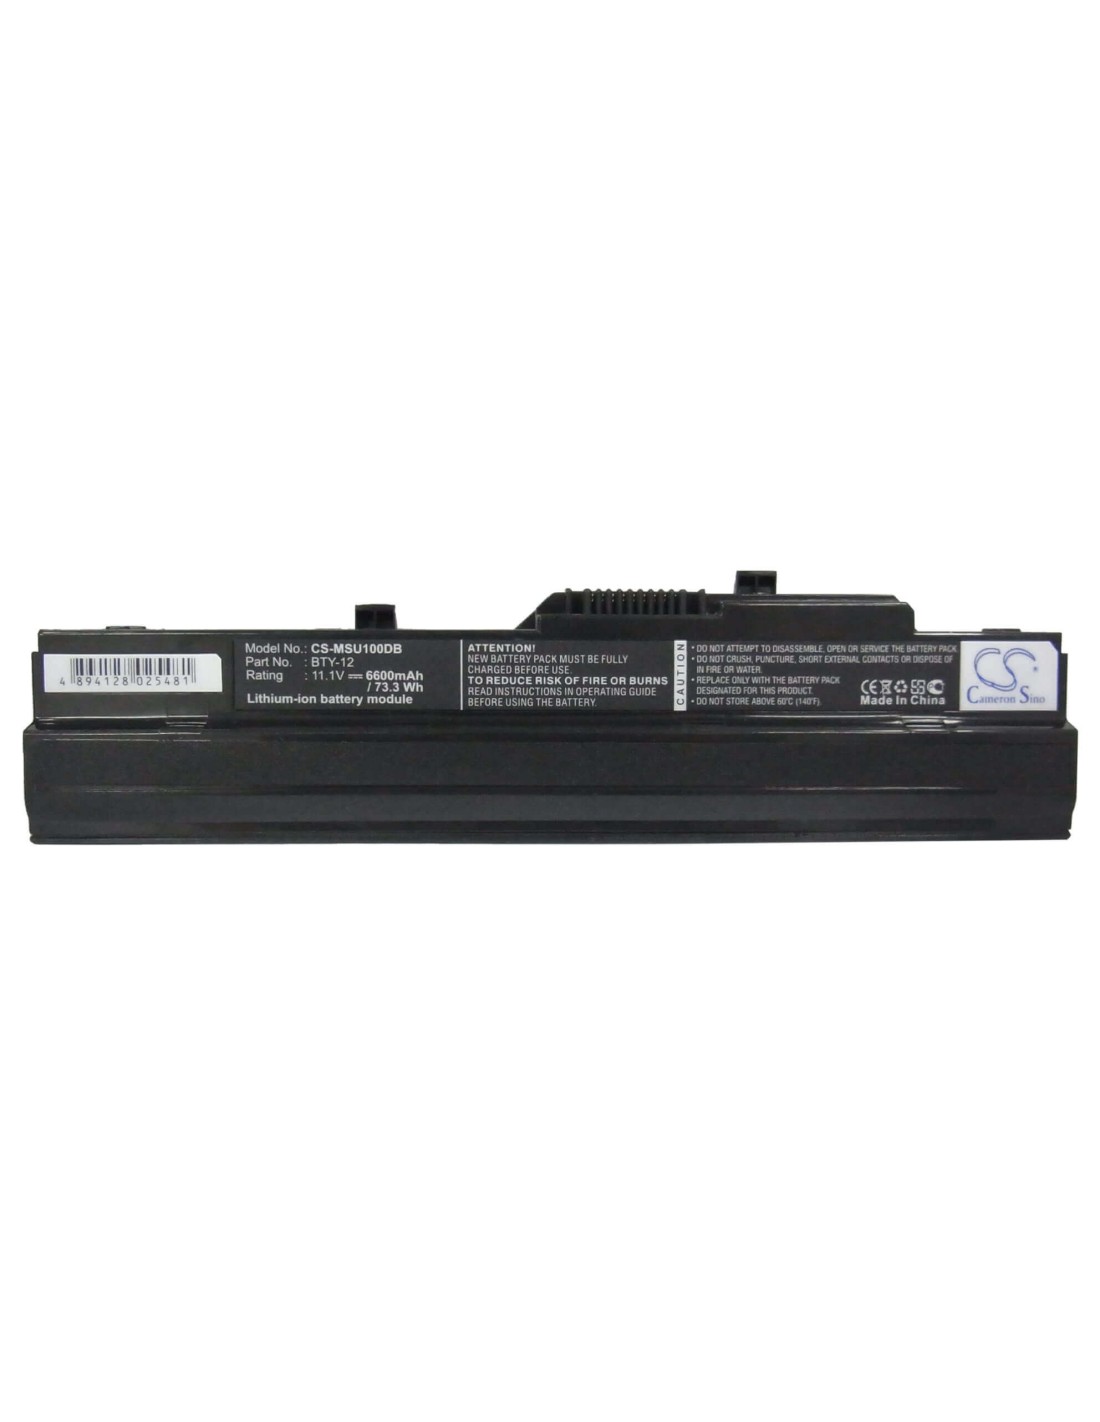 Black Battery for Advent 4211, 4212 11.1V, 6600mAh - 73.26Wh